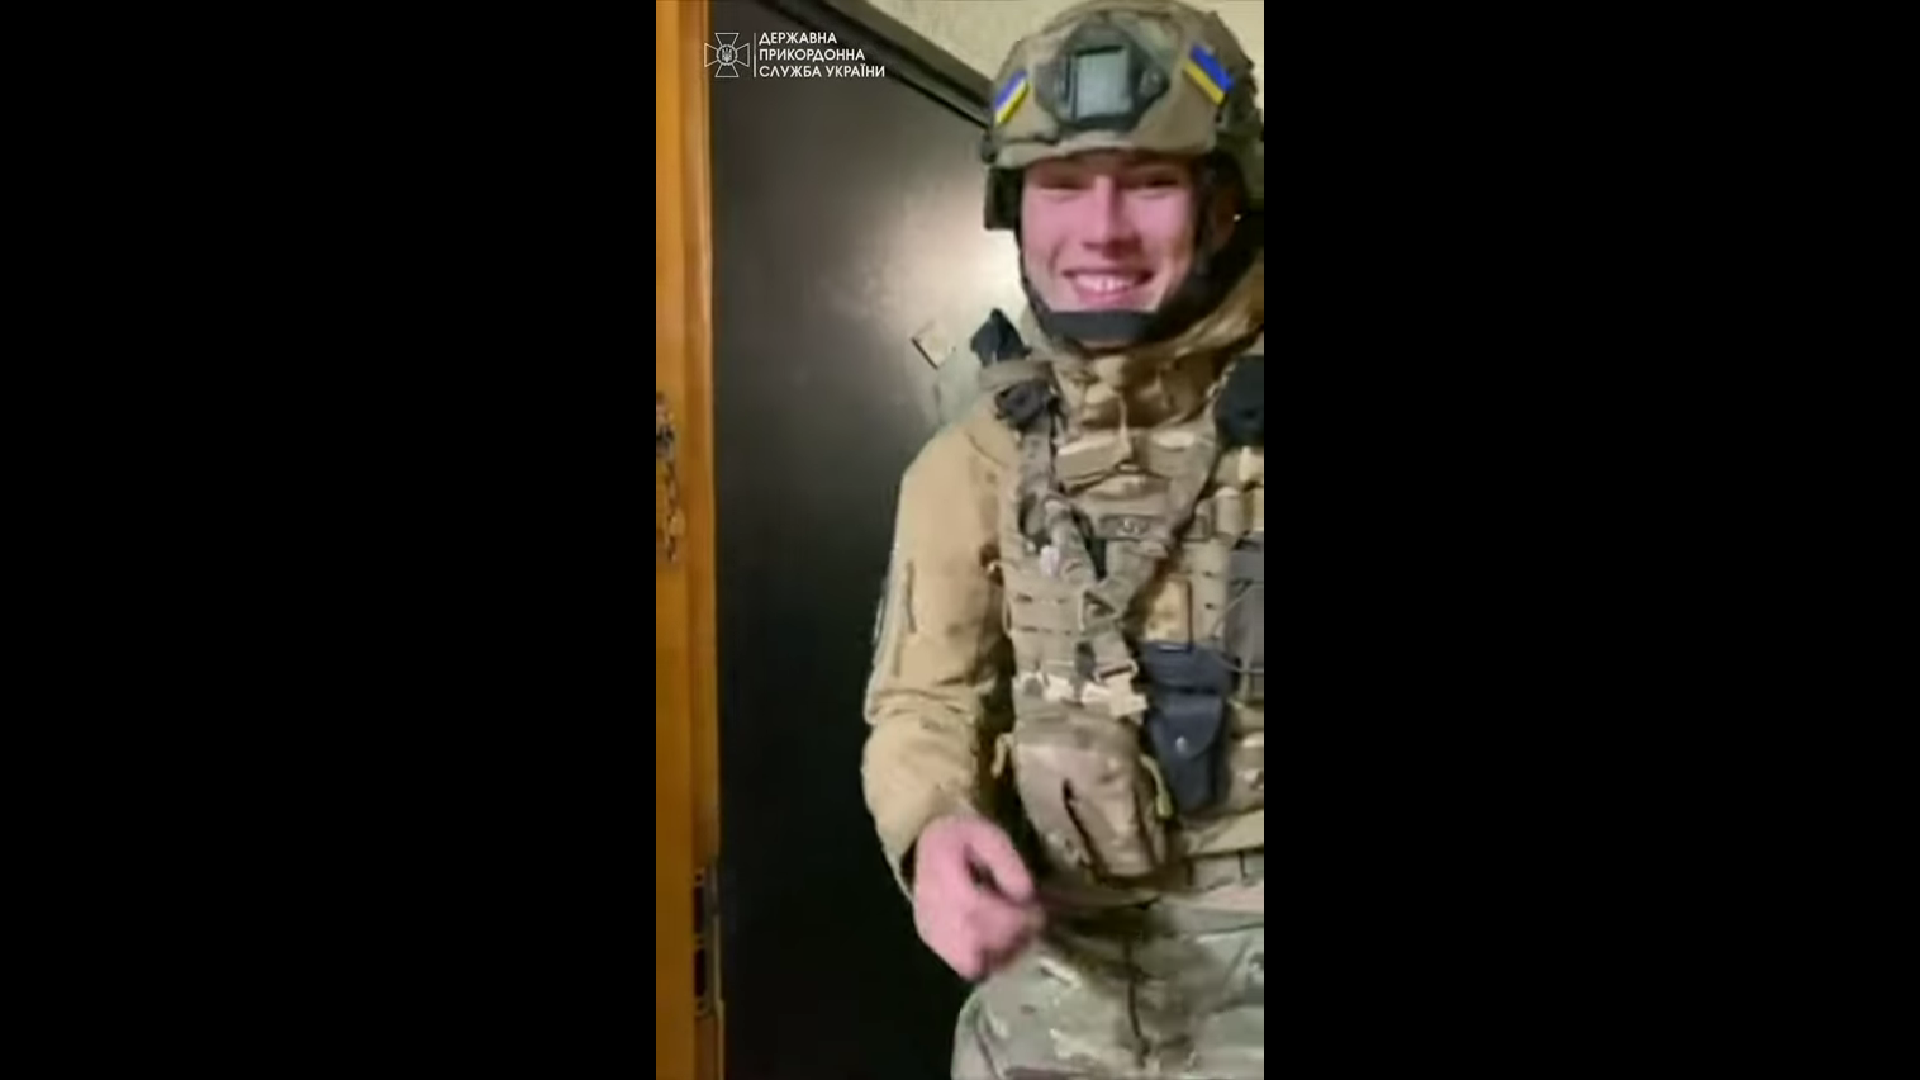 Посмотрите на эту улыбку: появилось милое видео с вернувшимся домой защитником Украины